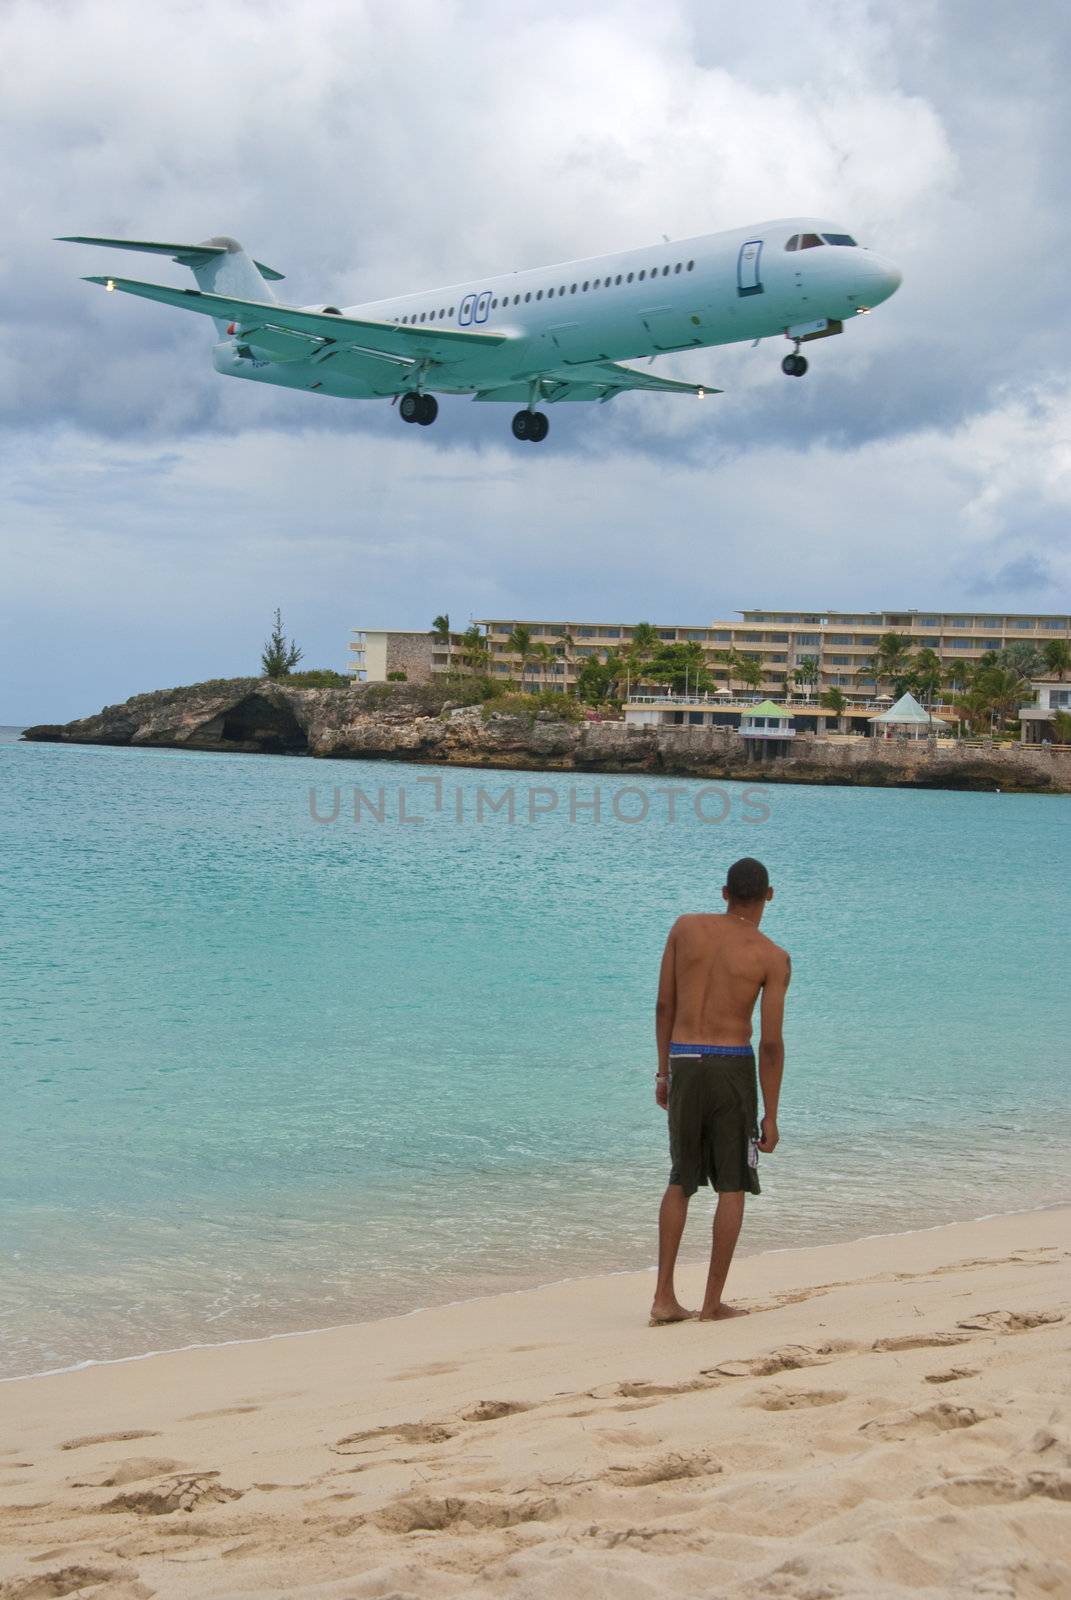 Plane arriving in St. Maarten Airport, Caribbean Islands by jovannig